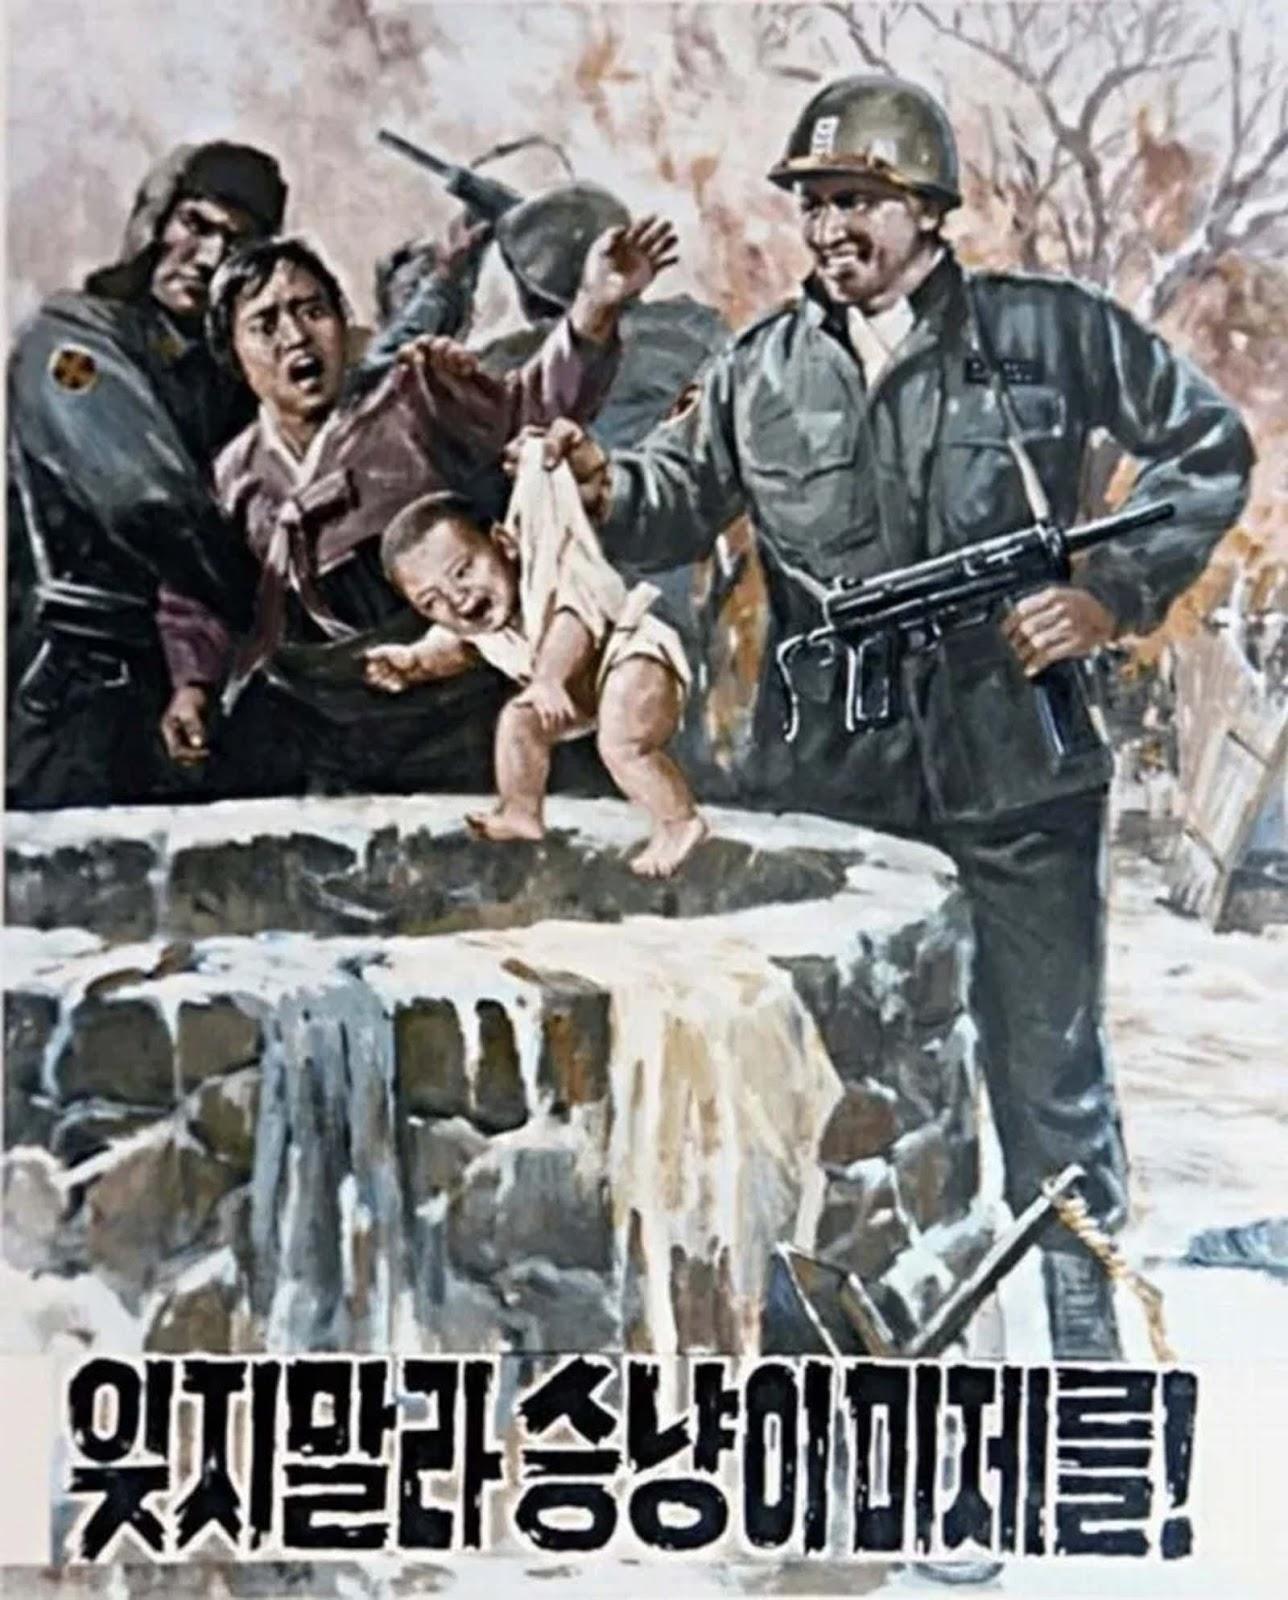 Des images violentes de Nord-coréens anti-Américain de la propagande de l'art, 1950-1970